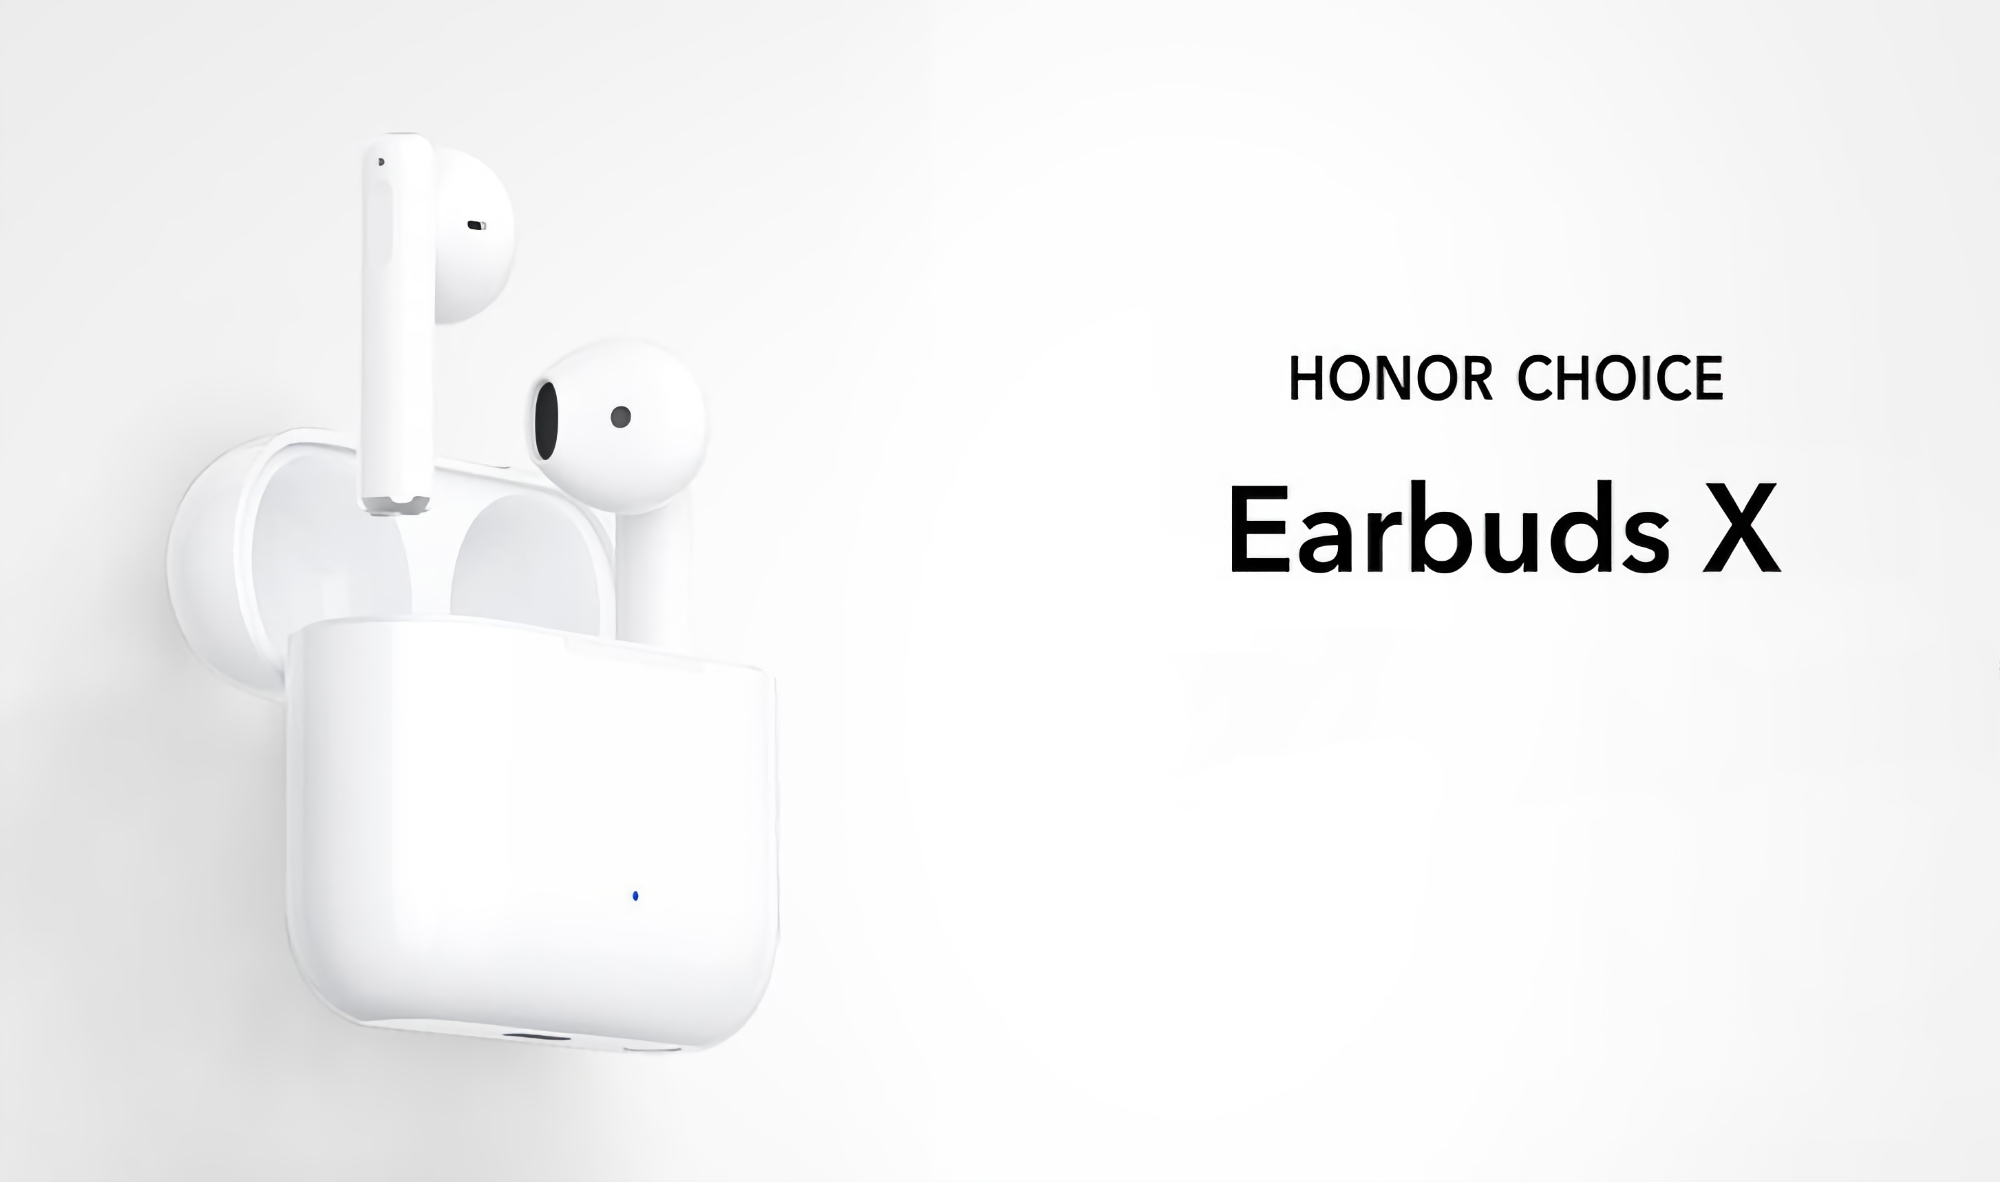 Los Honor Choice Earbuds X salen a la venta fuera de China: Auriculares TWS con protección IPX4 y hasta 28 de batería por 31 dólares